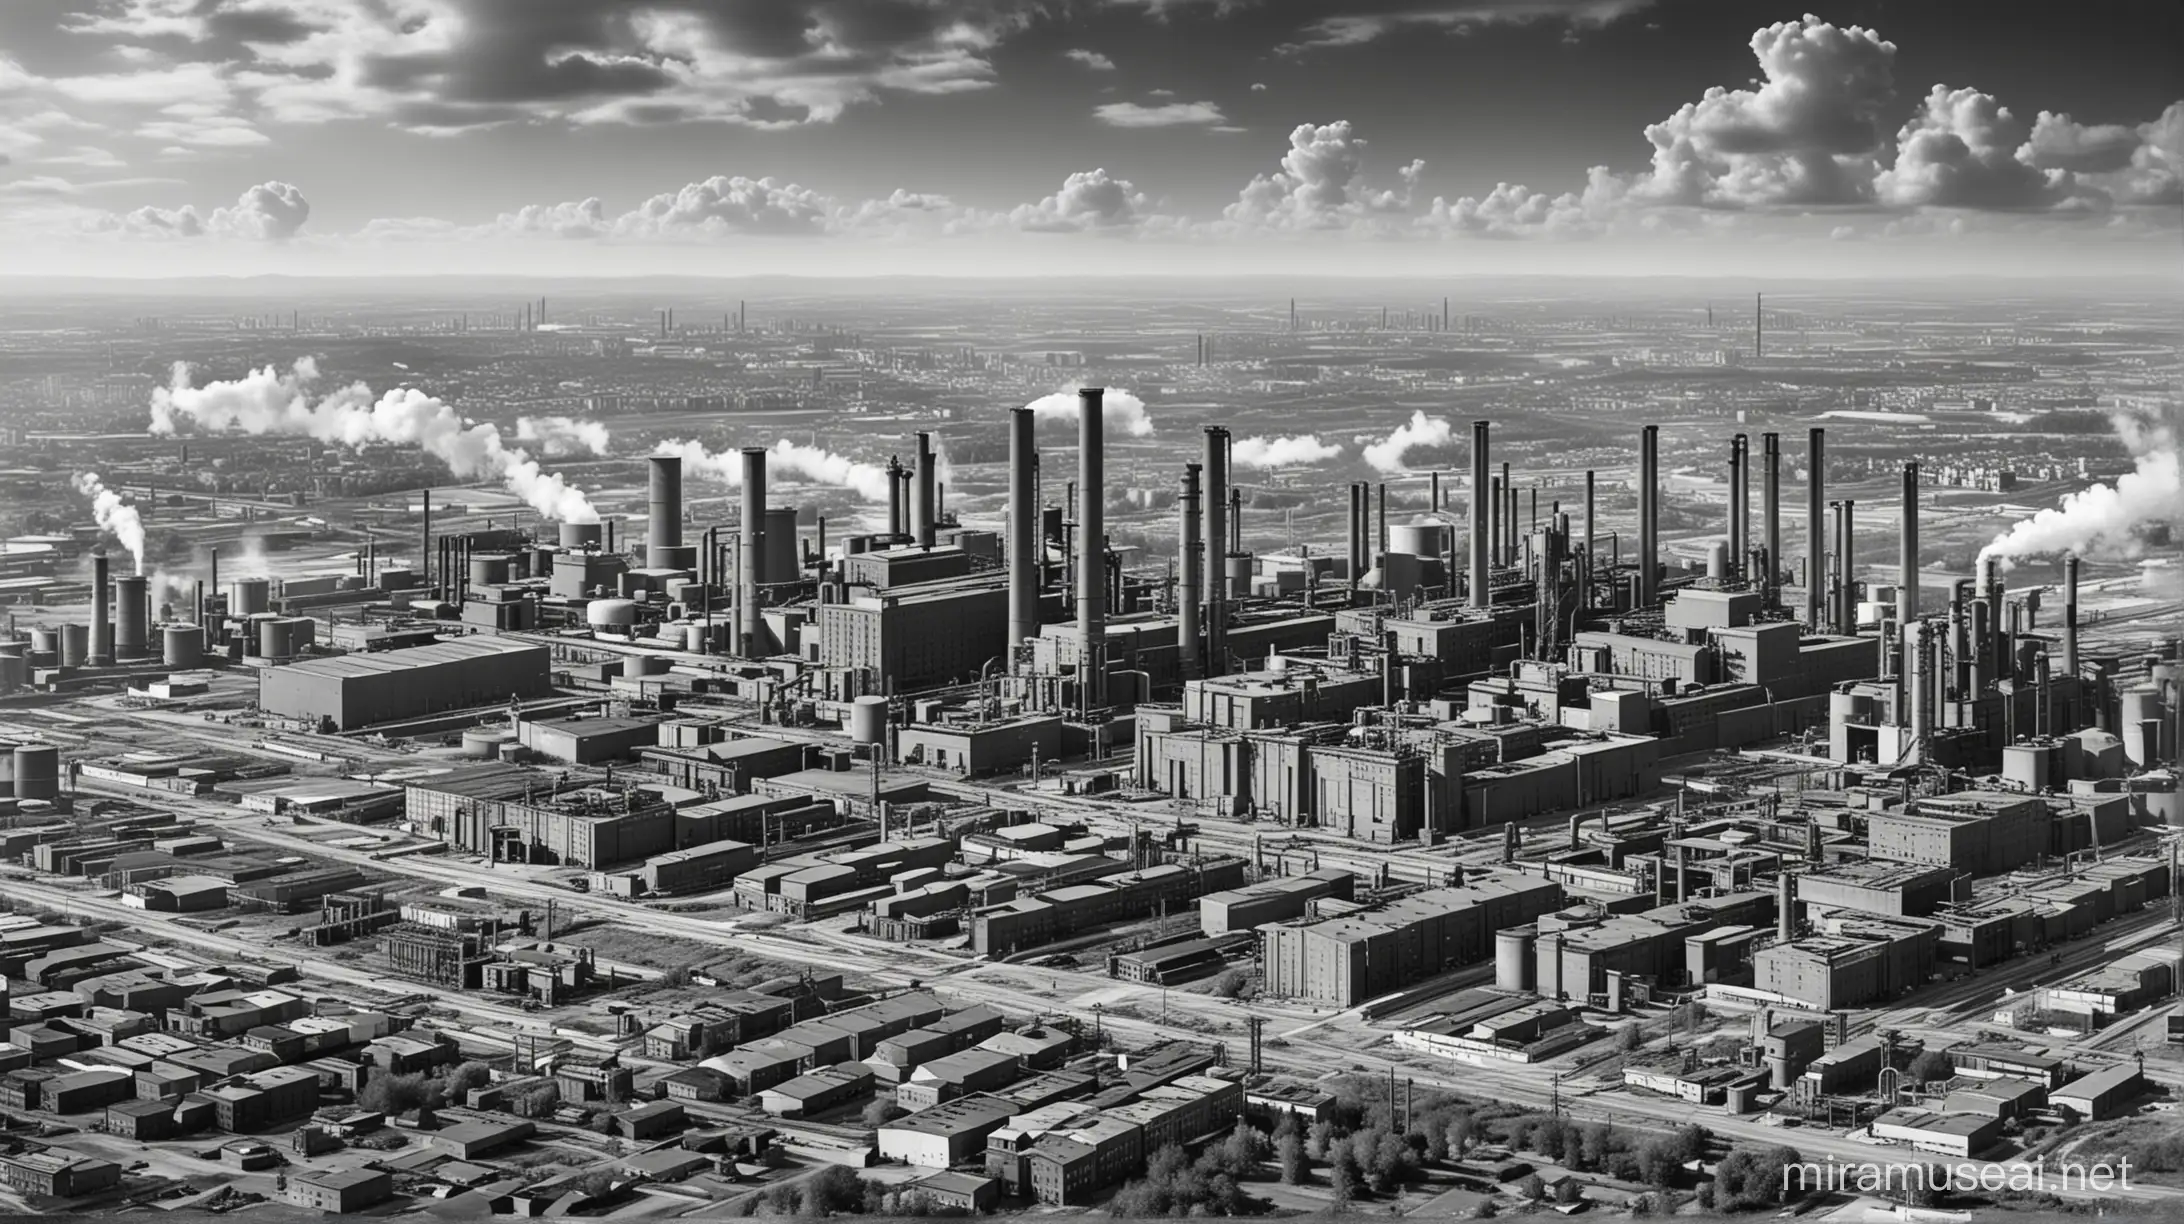 Polo industrial gigantesco com usinas. Ano de 1920 e imagem preta e branca.